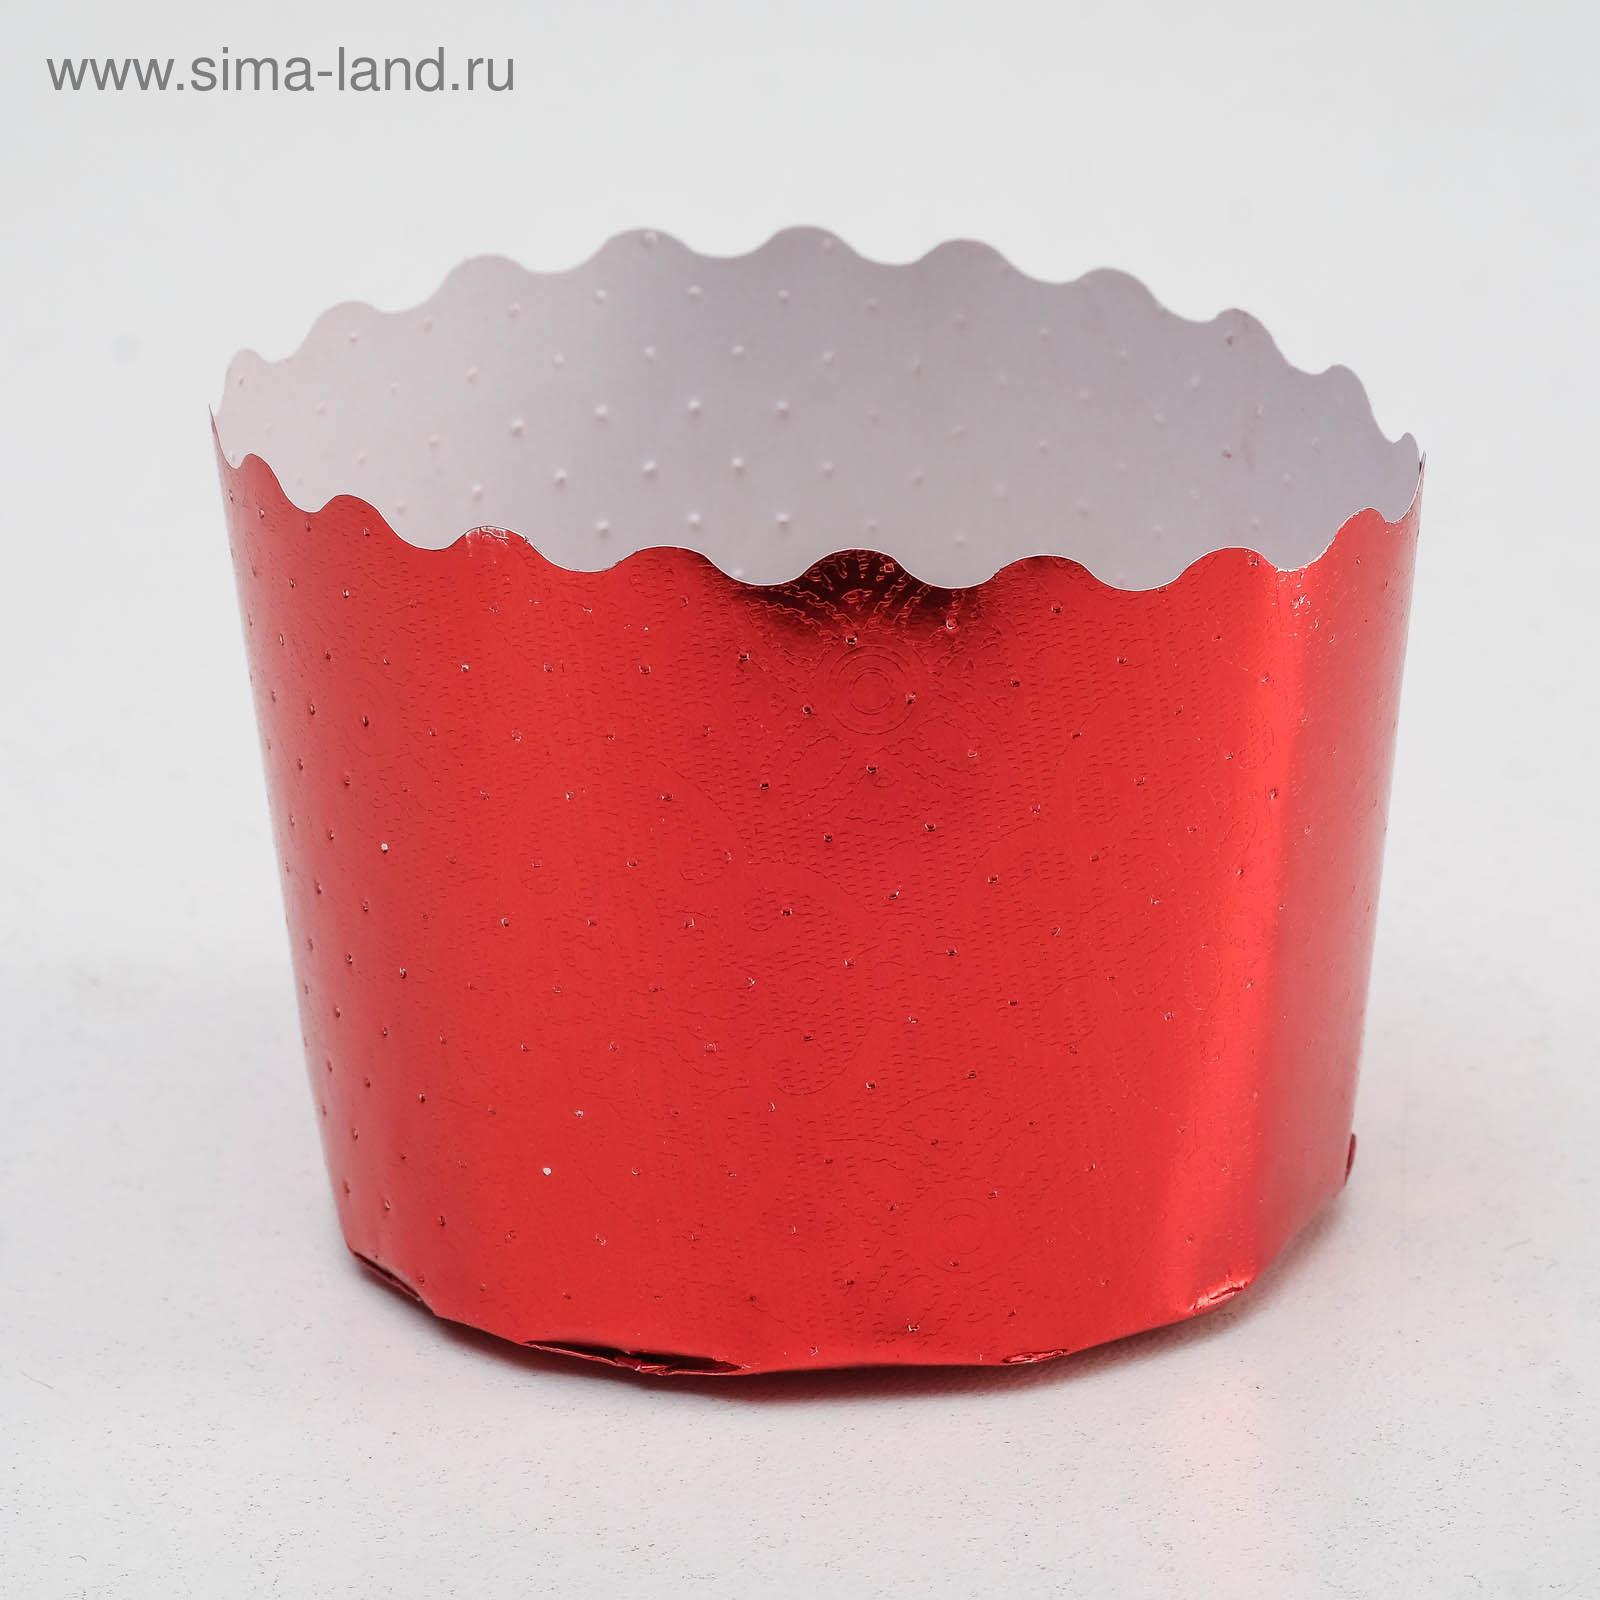 Форма для выпечки маффинов и кексов «Цветная»,красный, 6 х 4,5 см